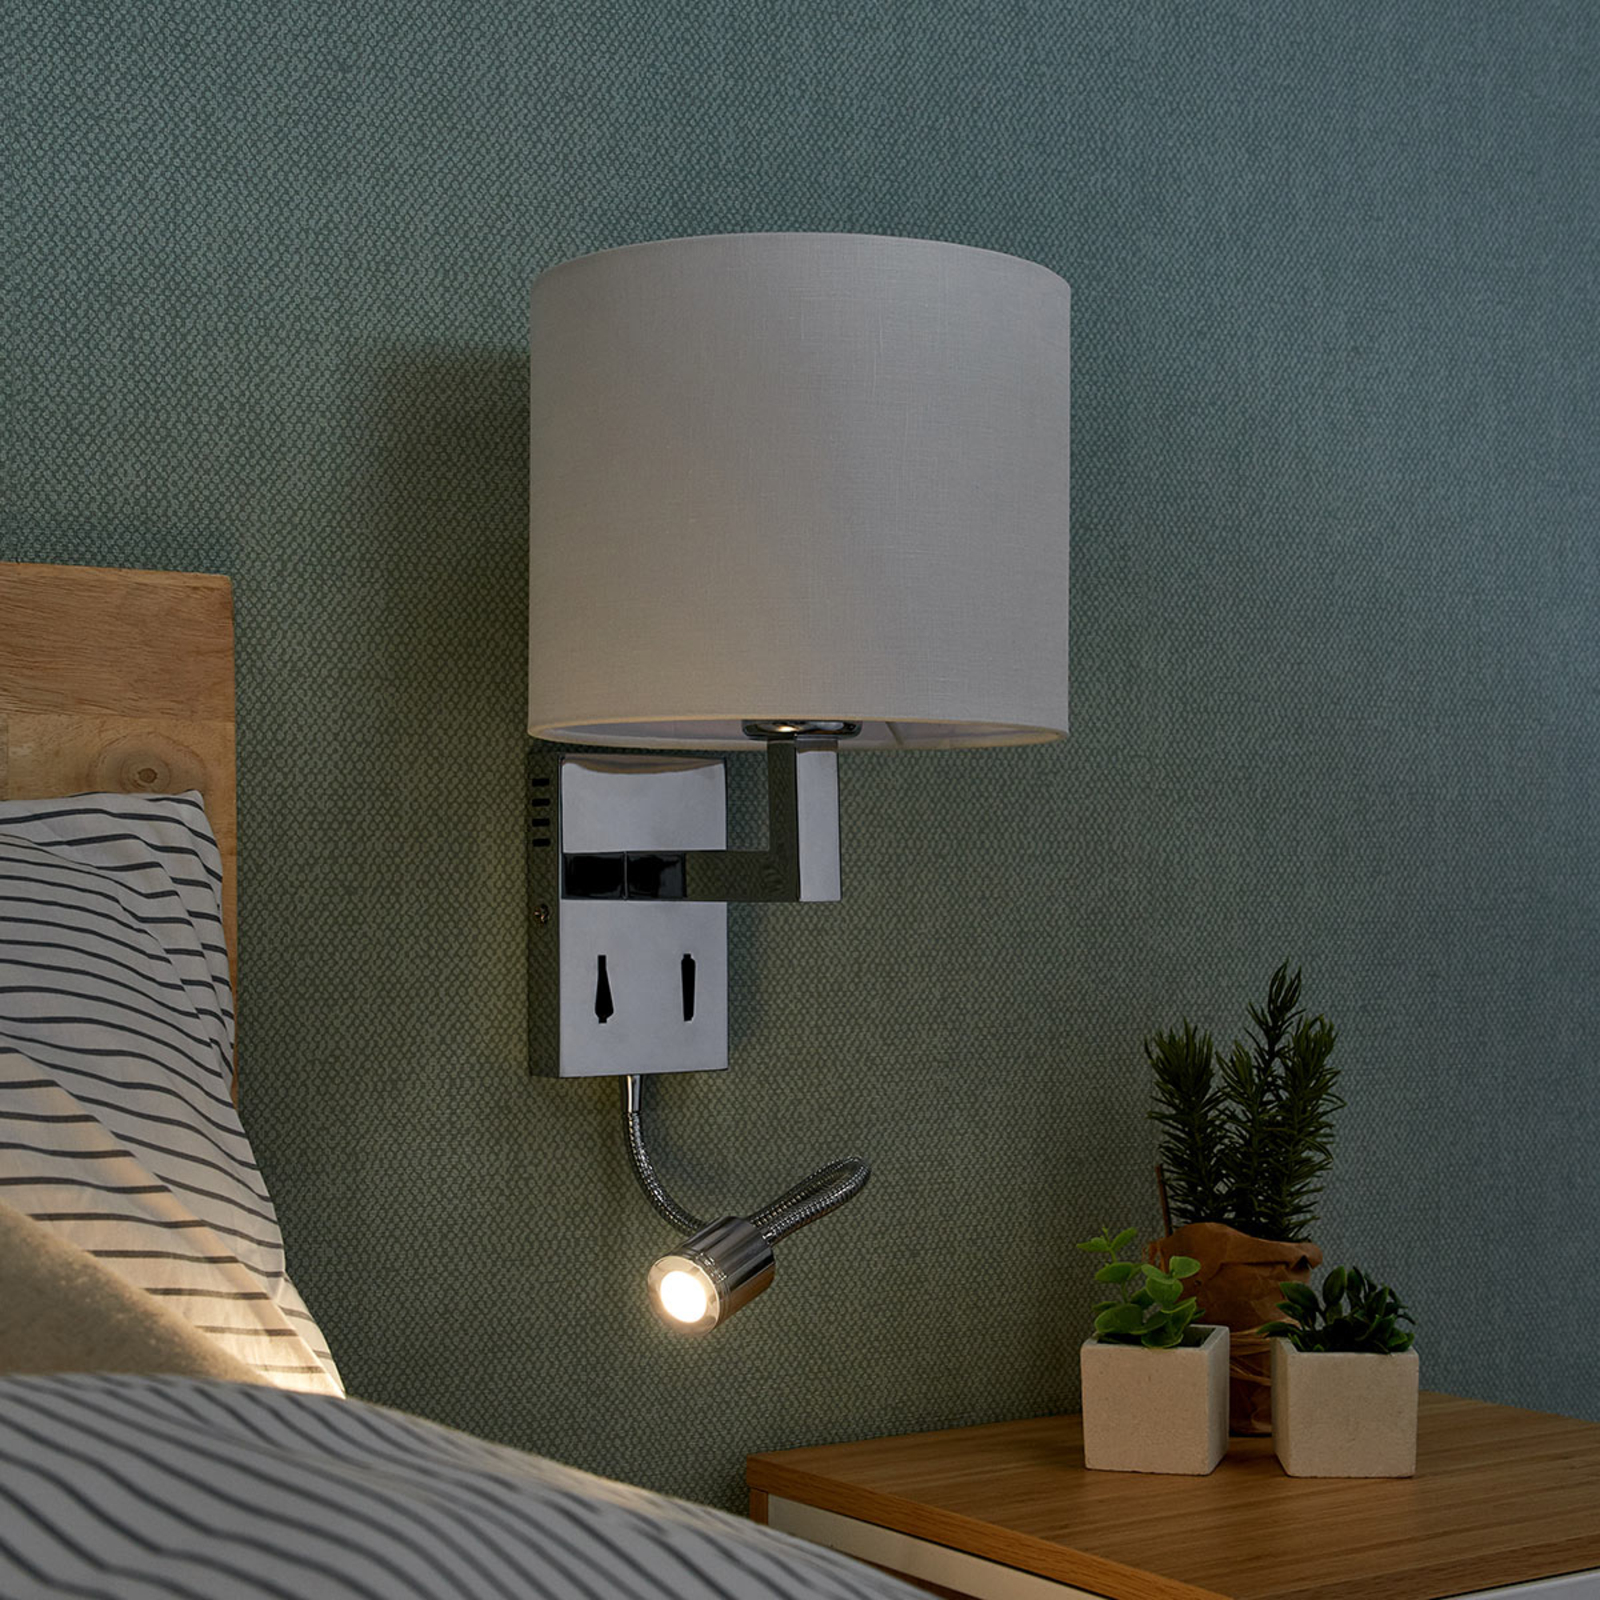 Lucande Taron fabric wall lamp, reading light